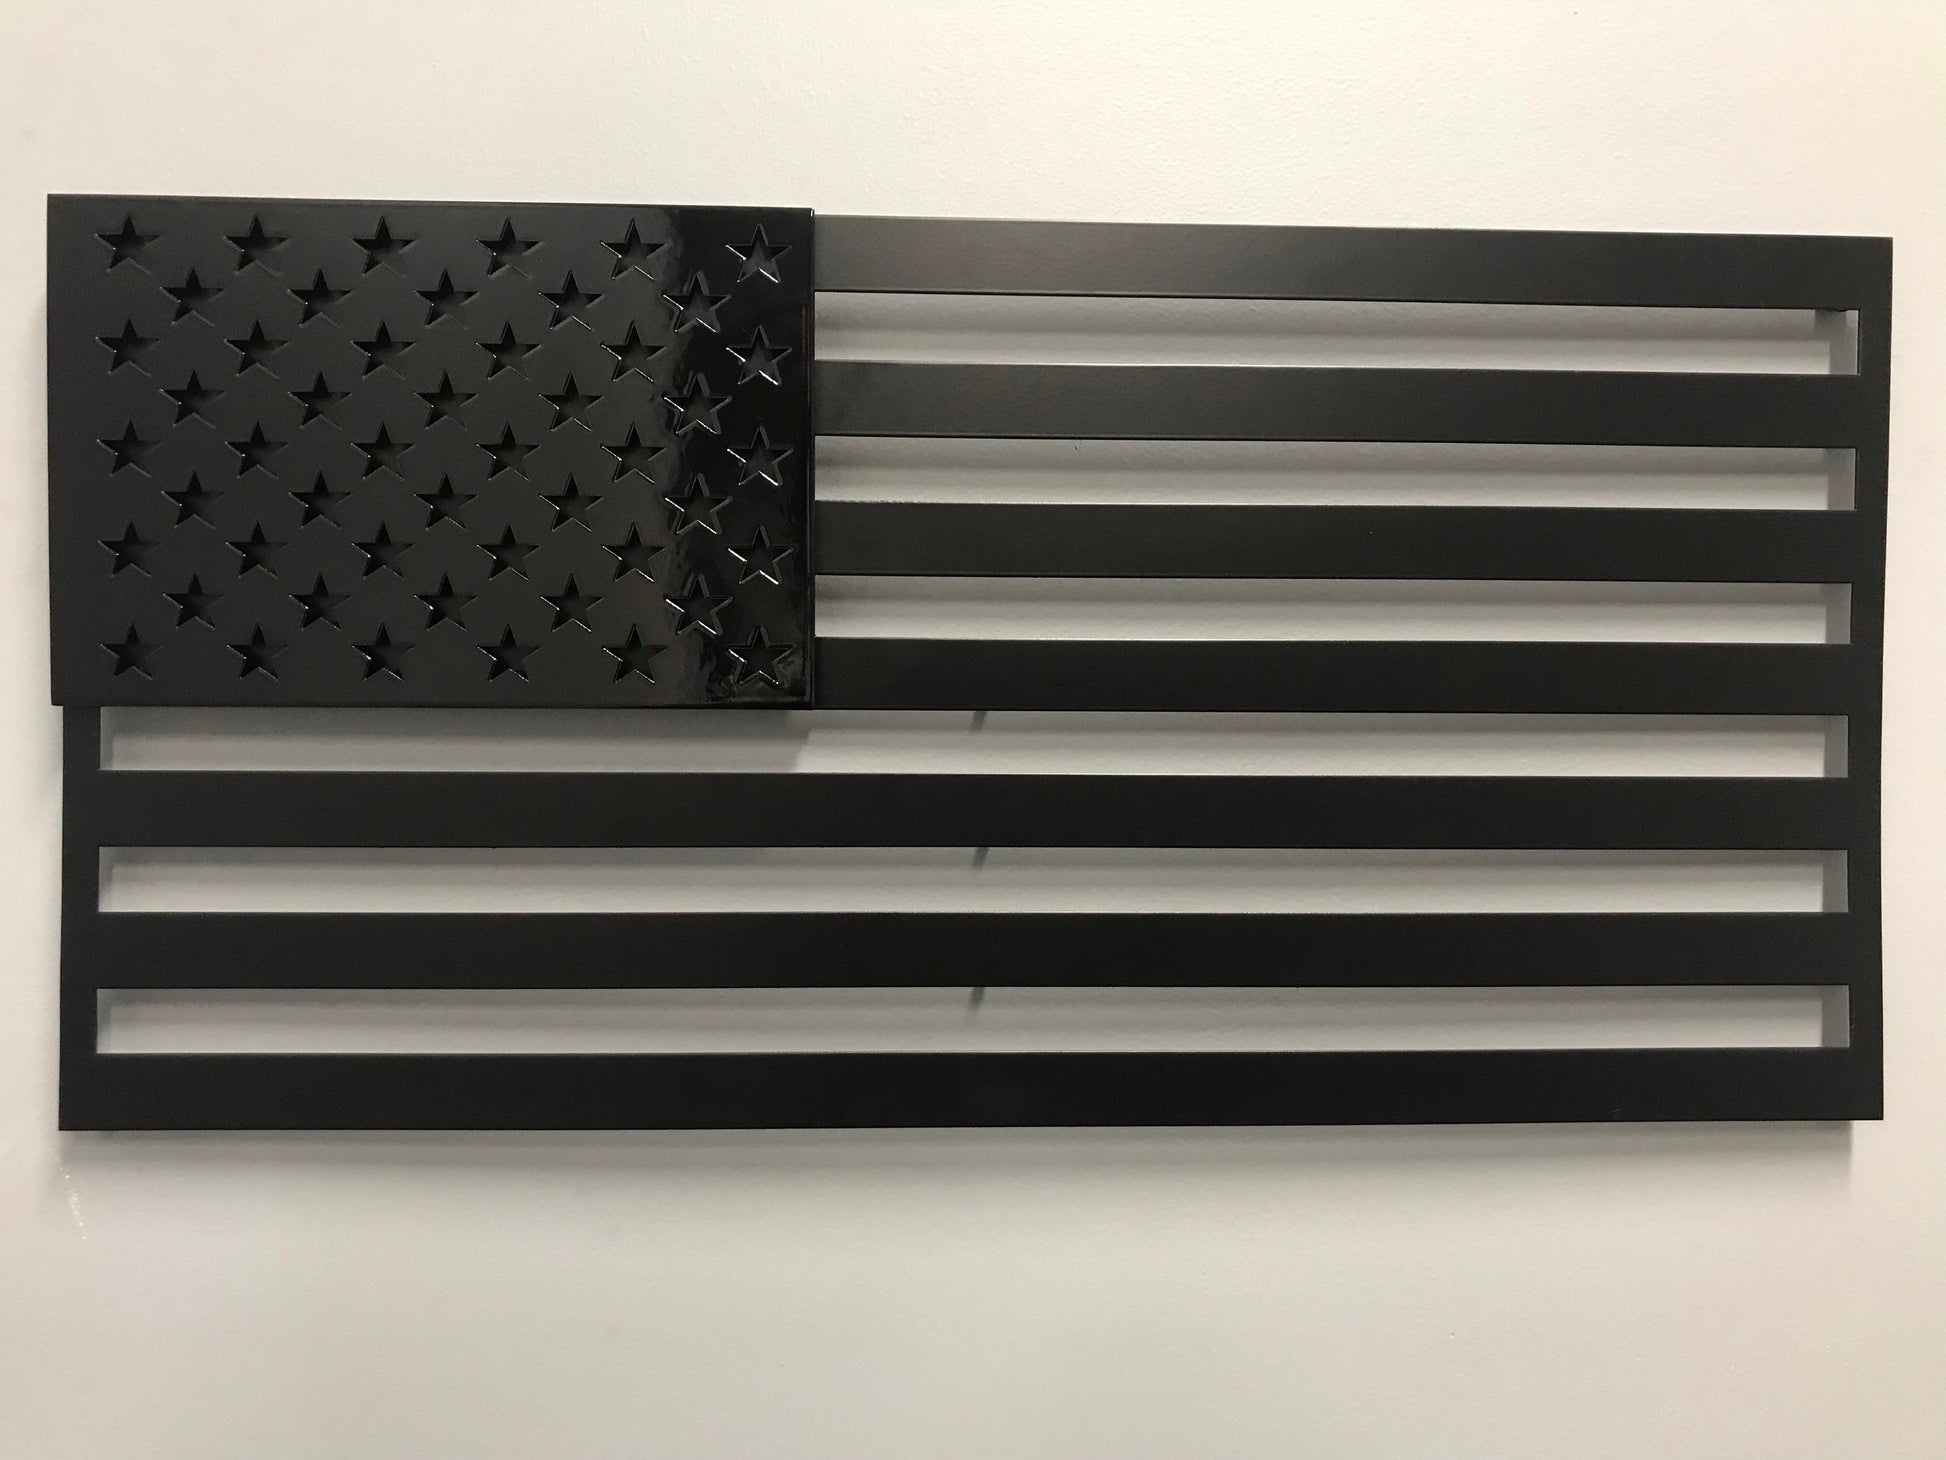 US FLAG - Stars On Stripes - Prismatic Metal